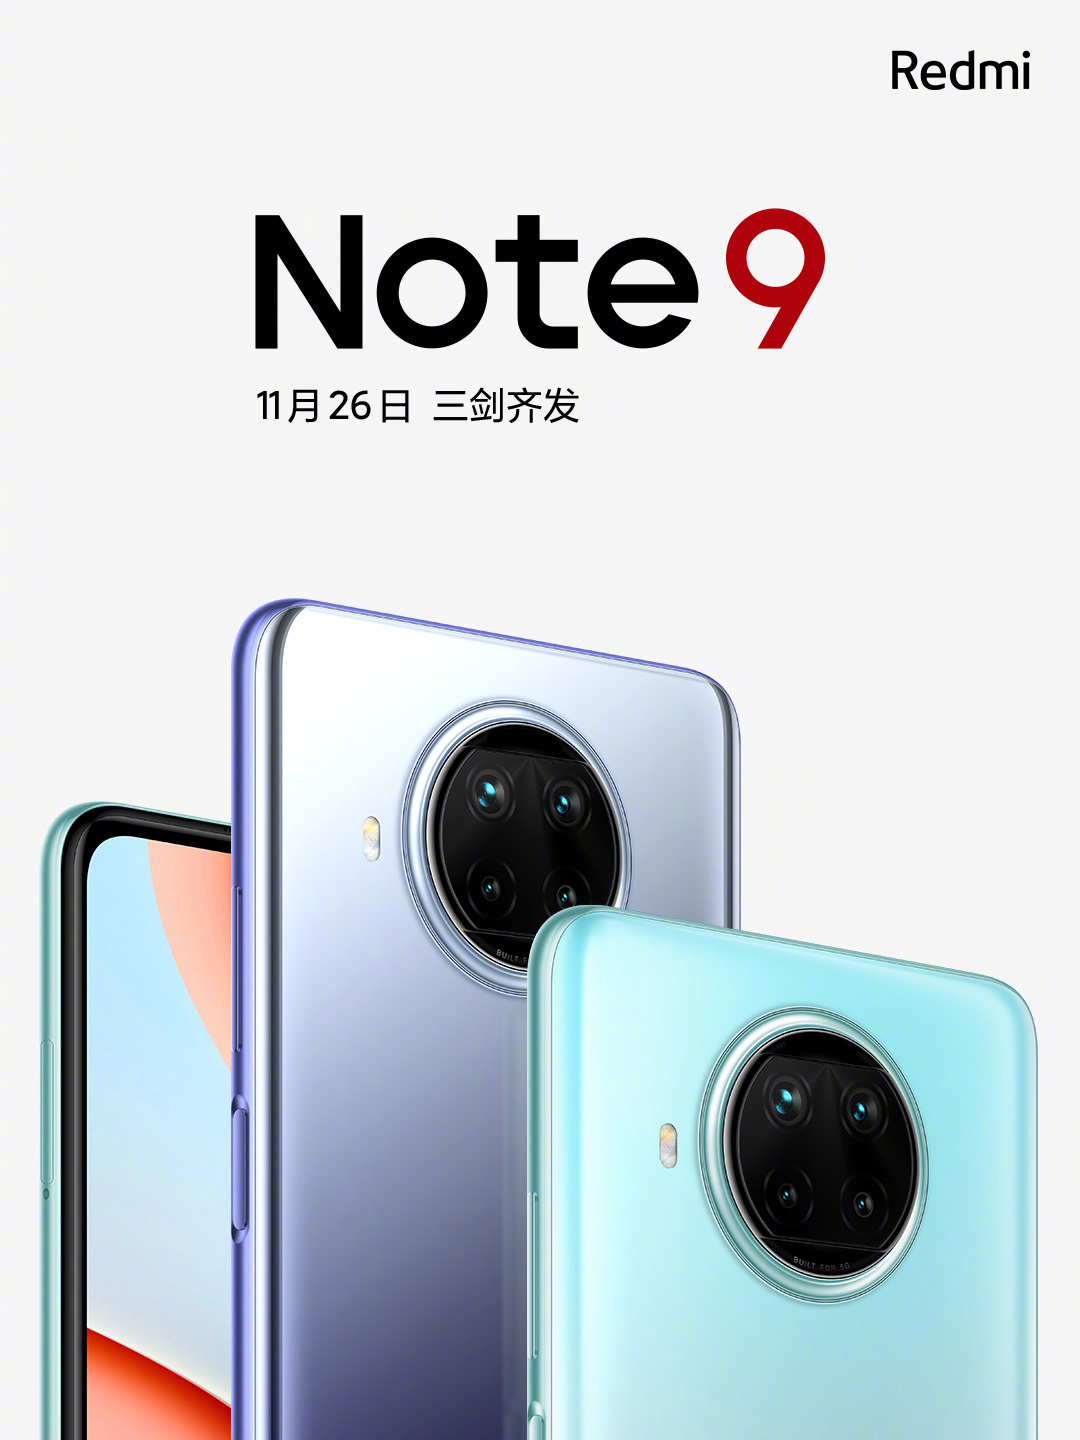 Redmi Note 9 5G సిరీస్ లాంచ్ తేదీ నవంబర్ 26